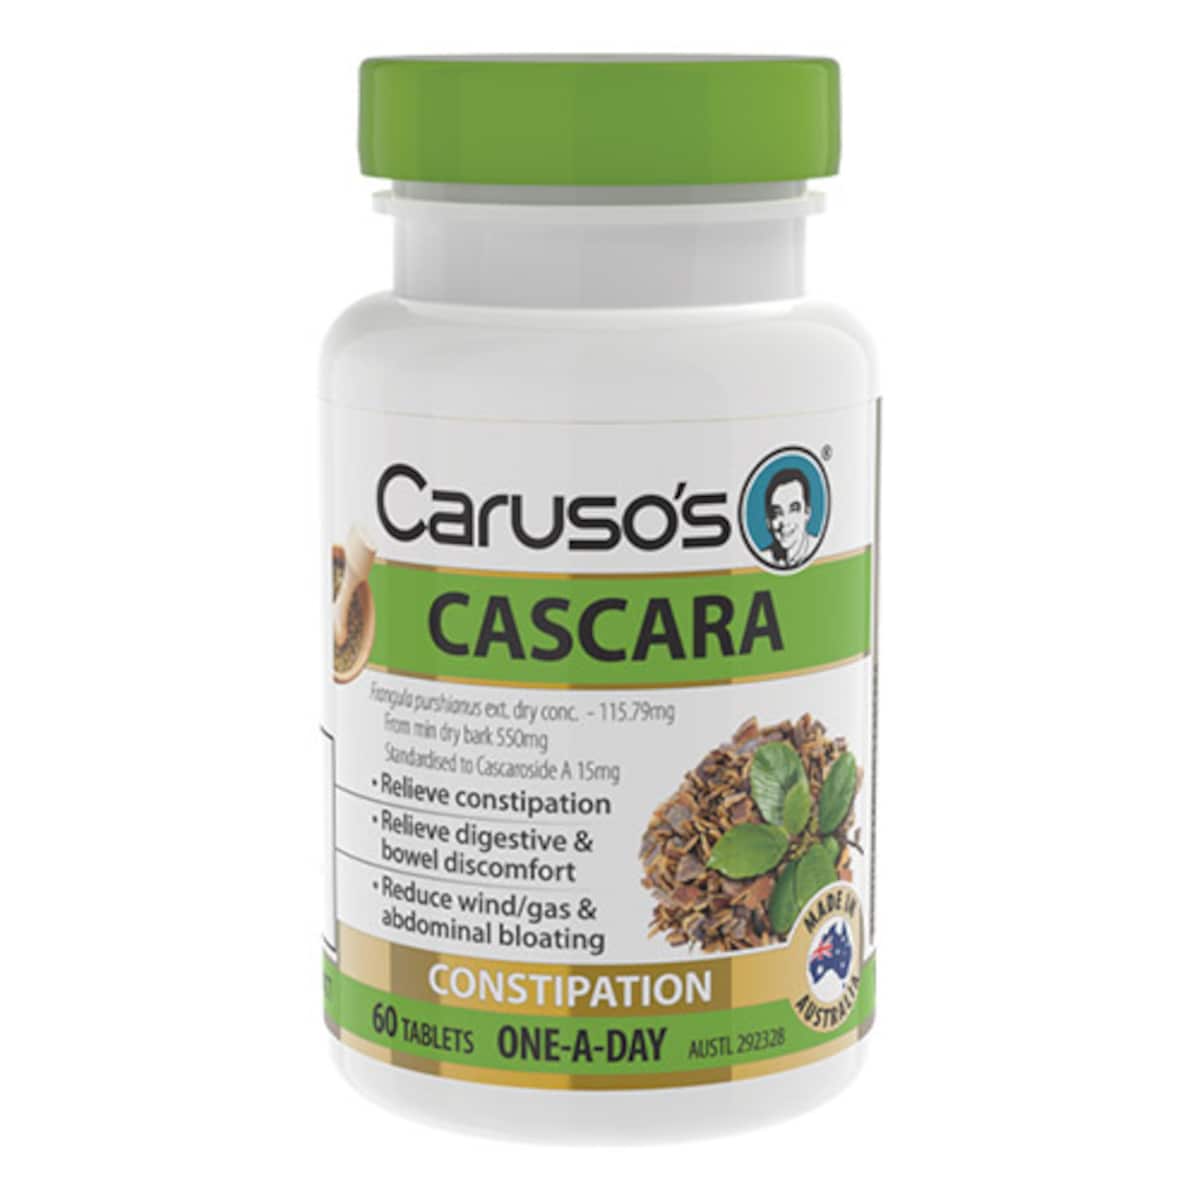 Carusos Cascara Constipation Relief 60 Tablets